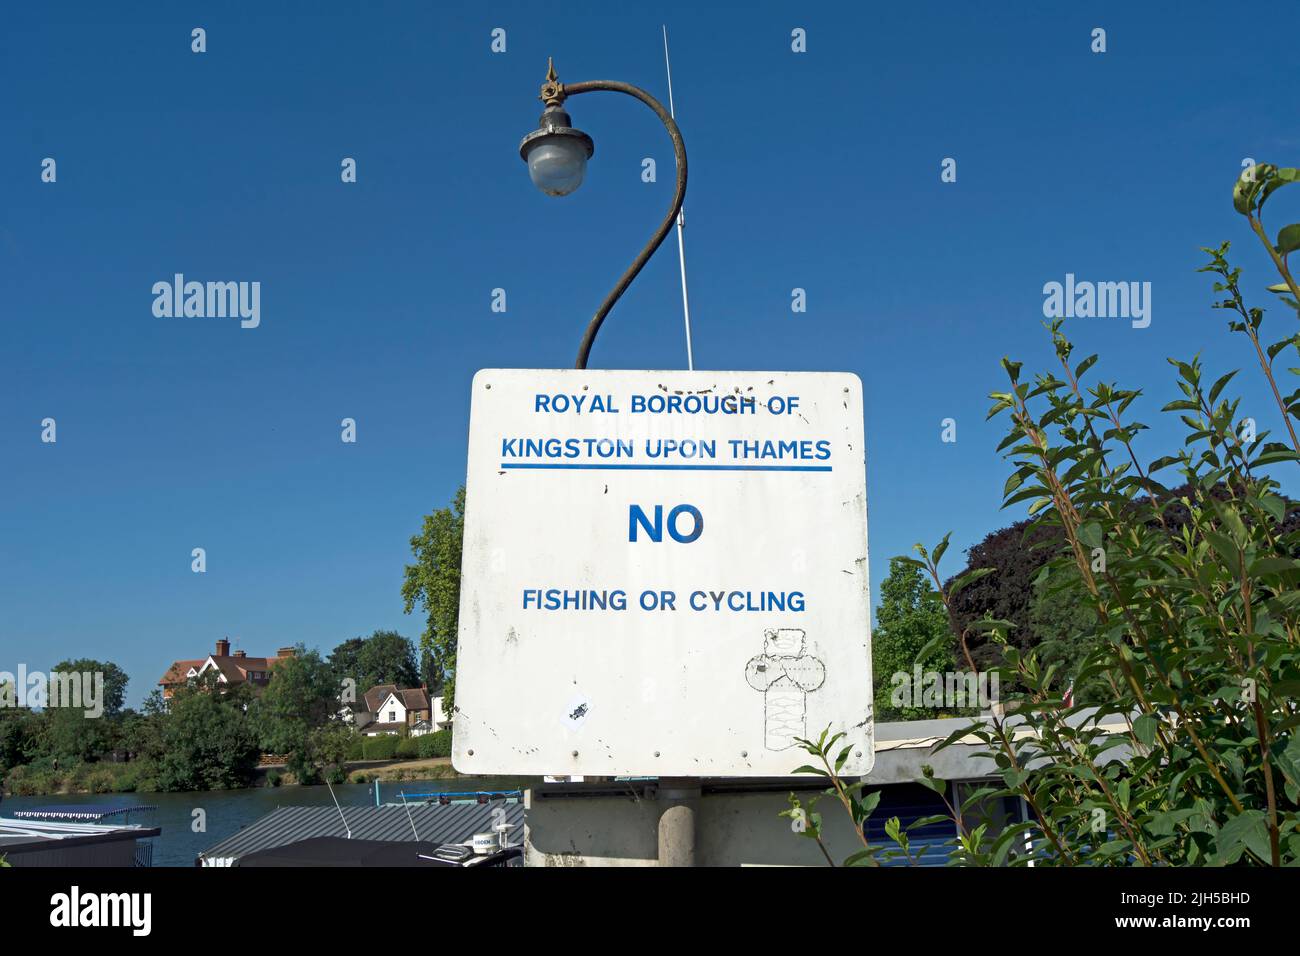 junto al río támesis, un distrito real de kingston upon thames muestra que no se puede pescar ni montar en bicicleta, kingston, surrey, inglaterra Foto de stock